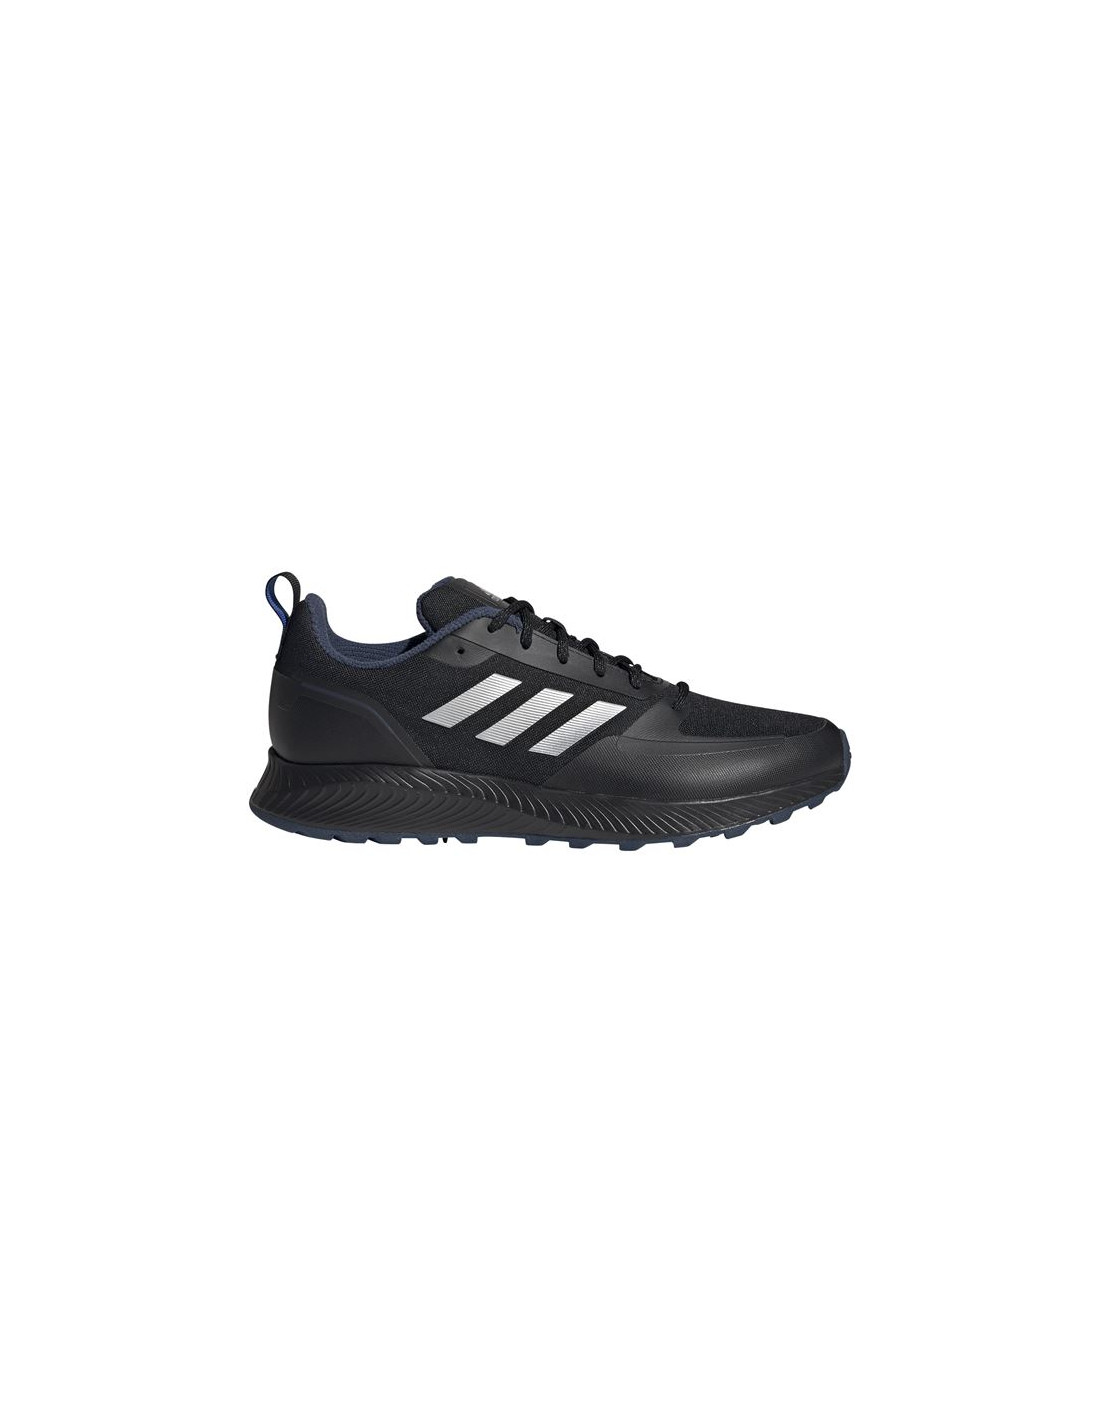 Zapatillas de running adidas runfalcon 2.0 tr m black/silver